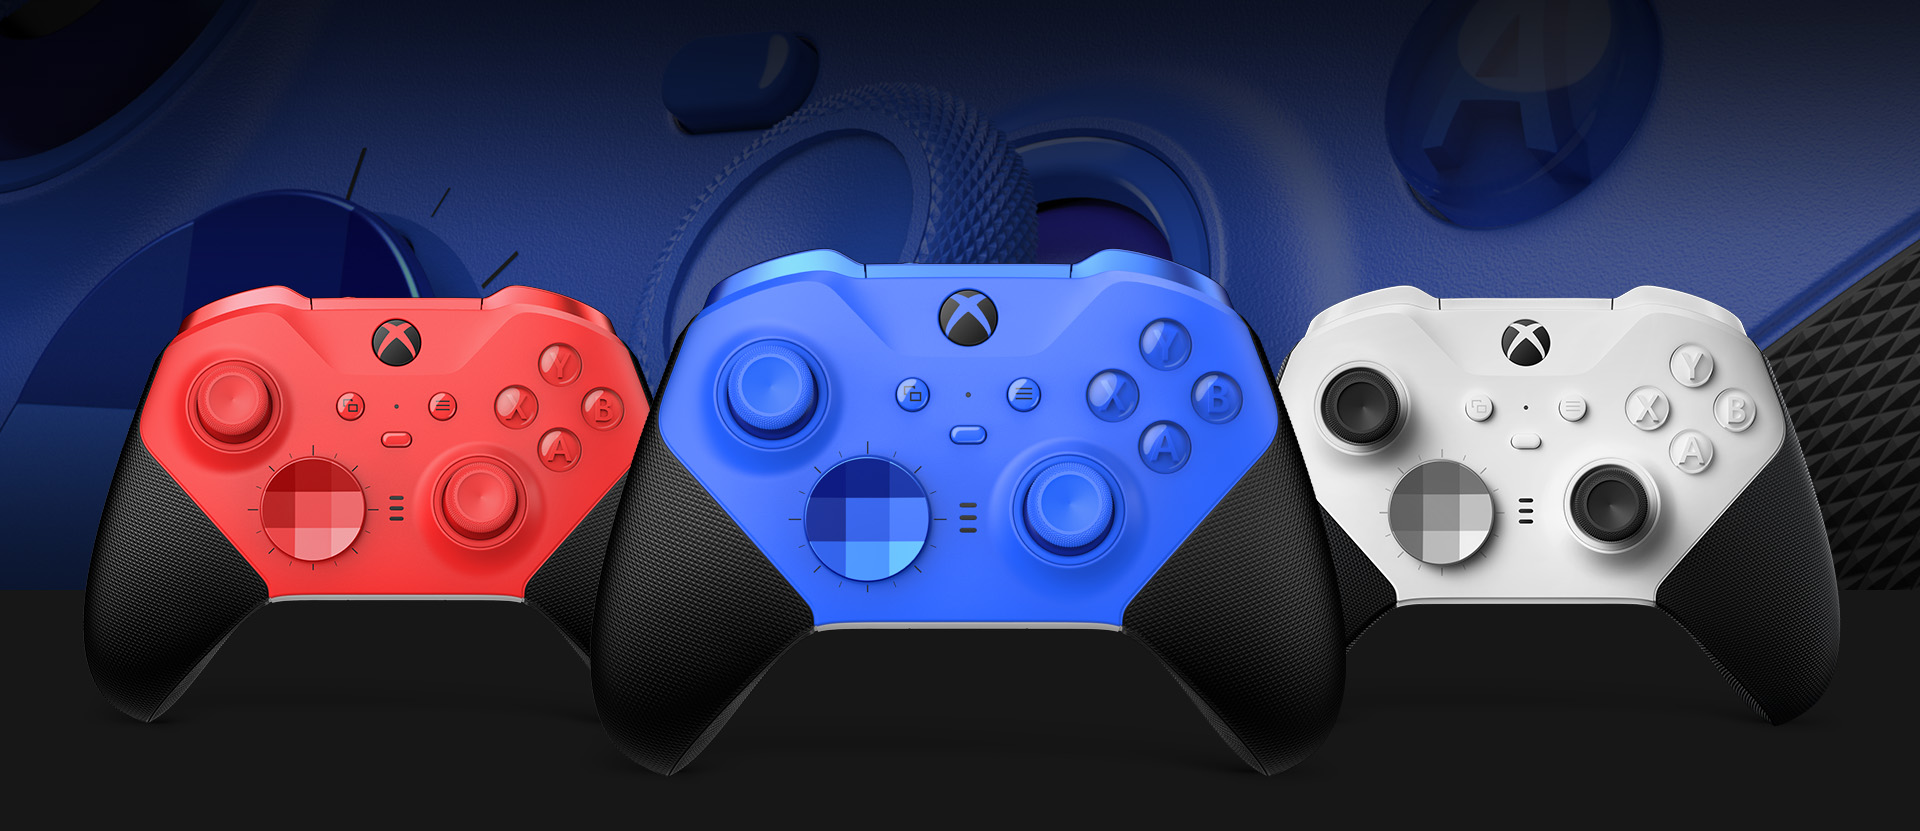 En bild framifrån av Xbox Elite trådlös handkontroll Series 2 – Core (blå) med andra färgalternativ bredvid. En närbild på handkontrollens styrspakar och texturerade grepp finns i bakgrunden.